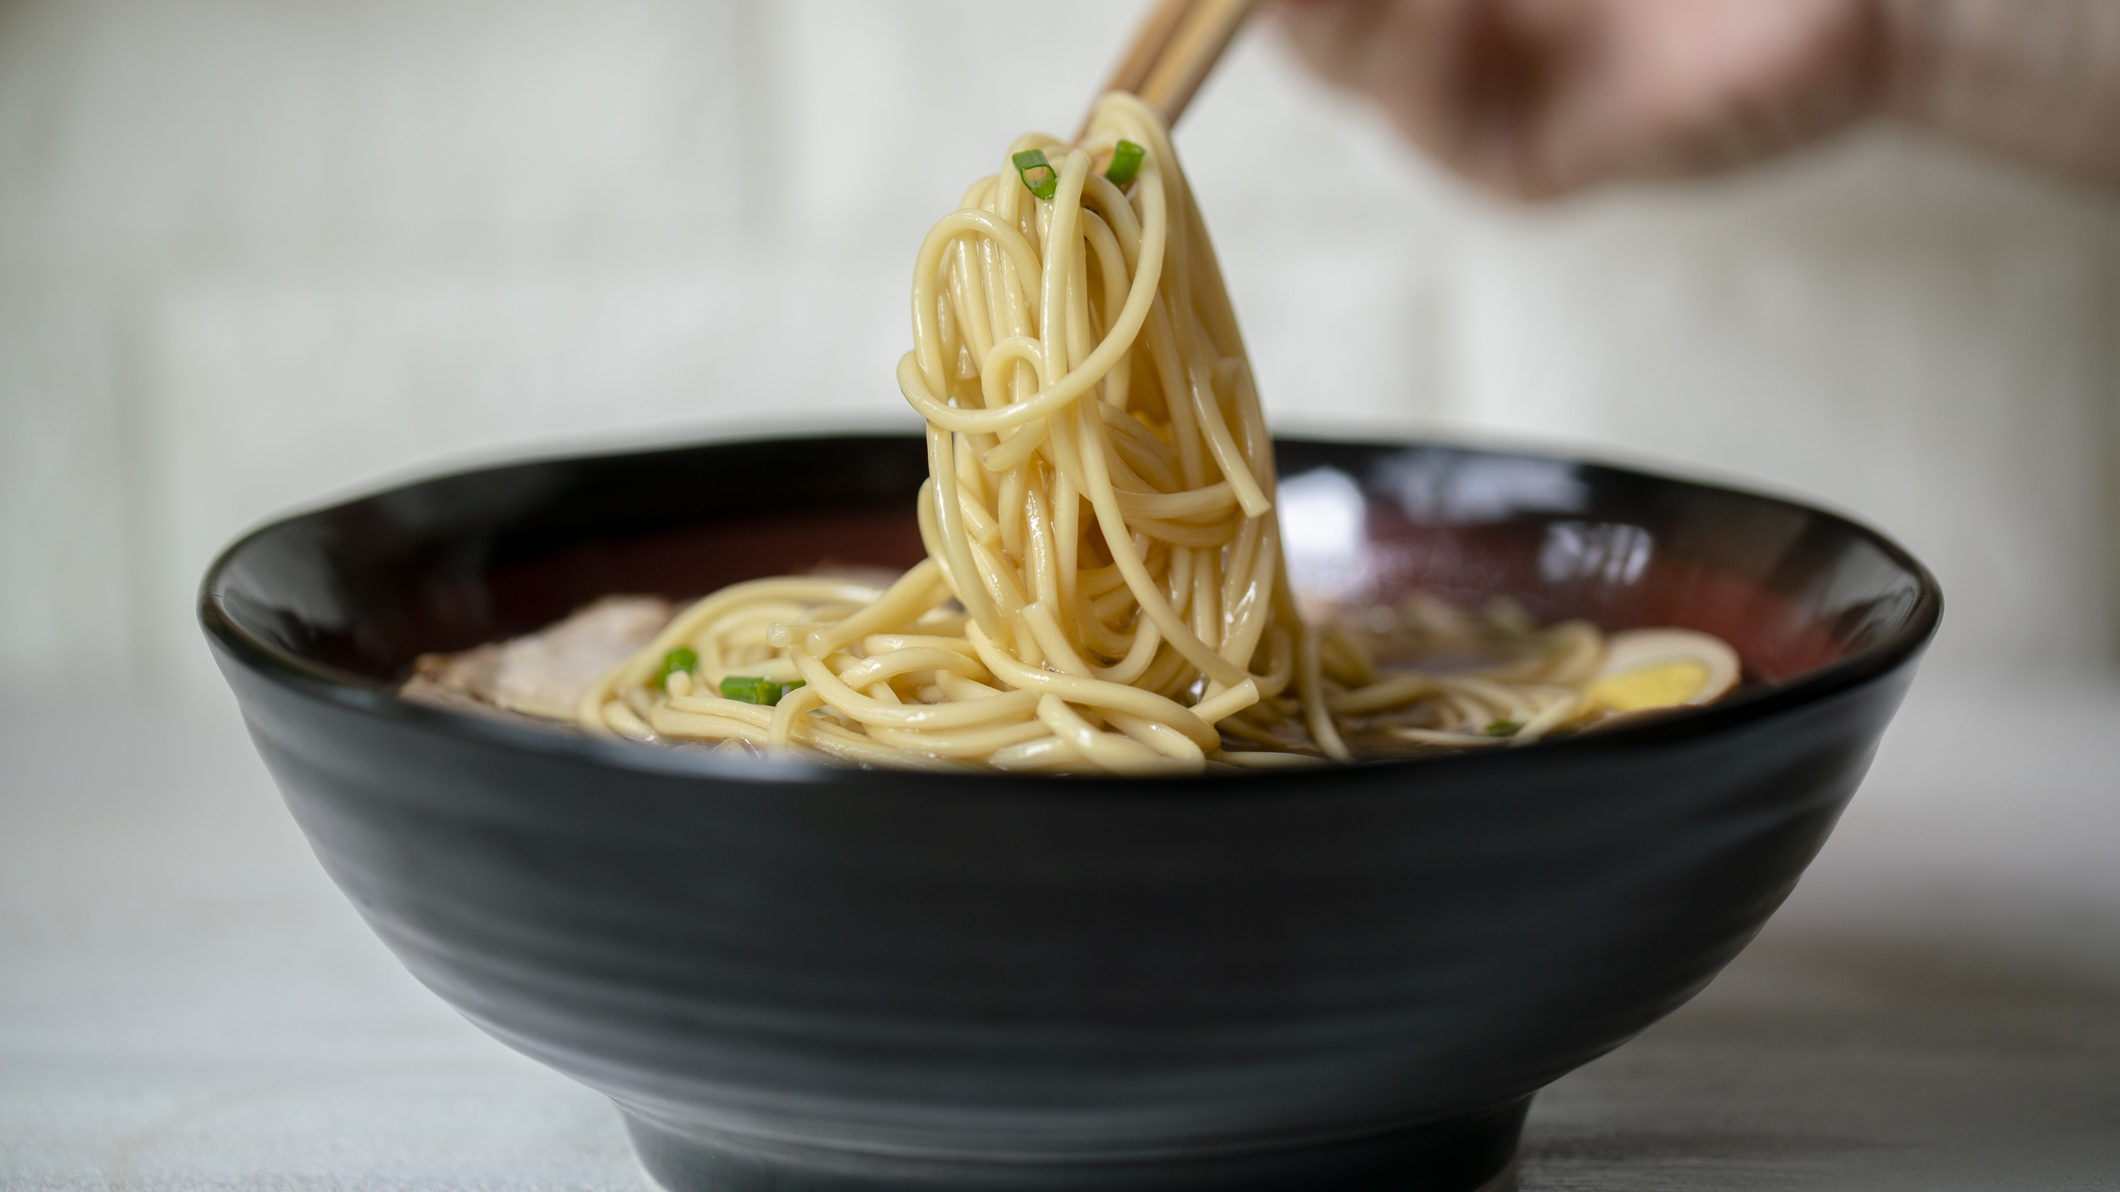 A bowl of noodles